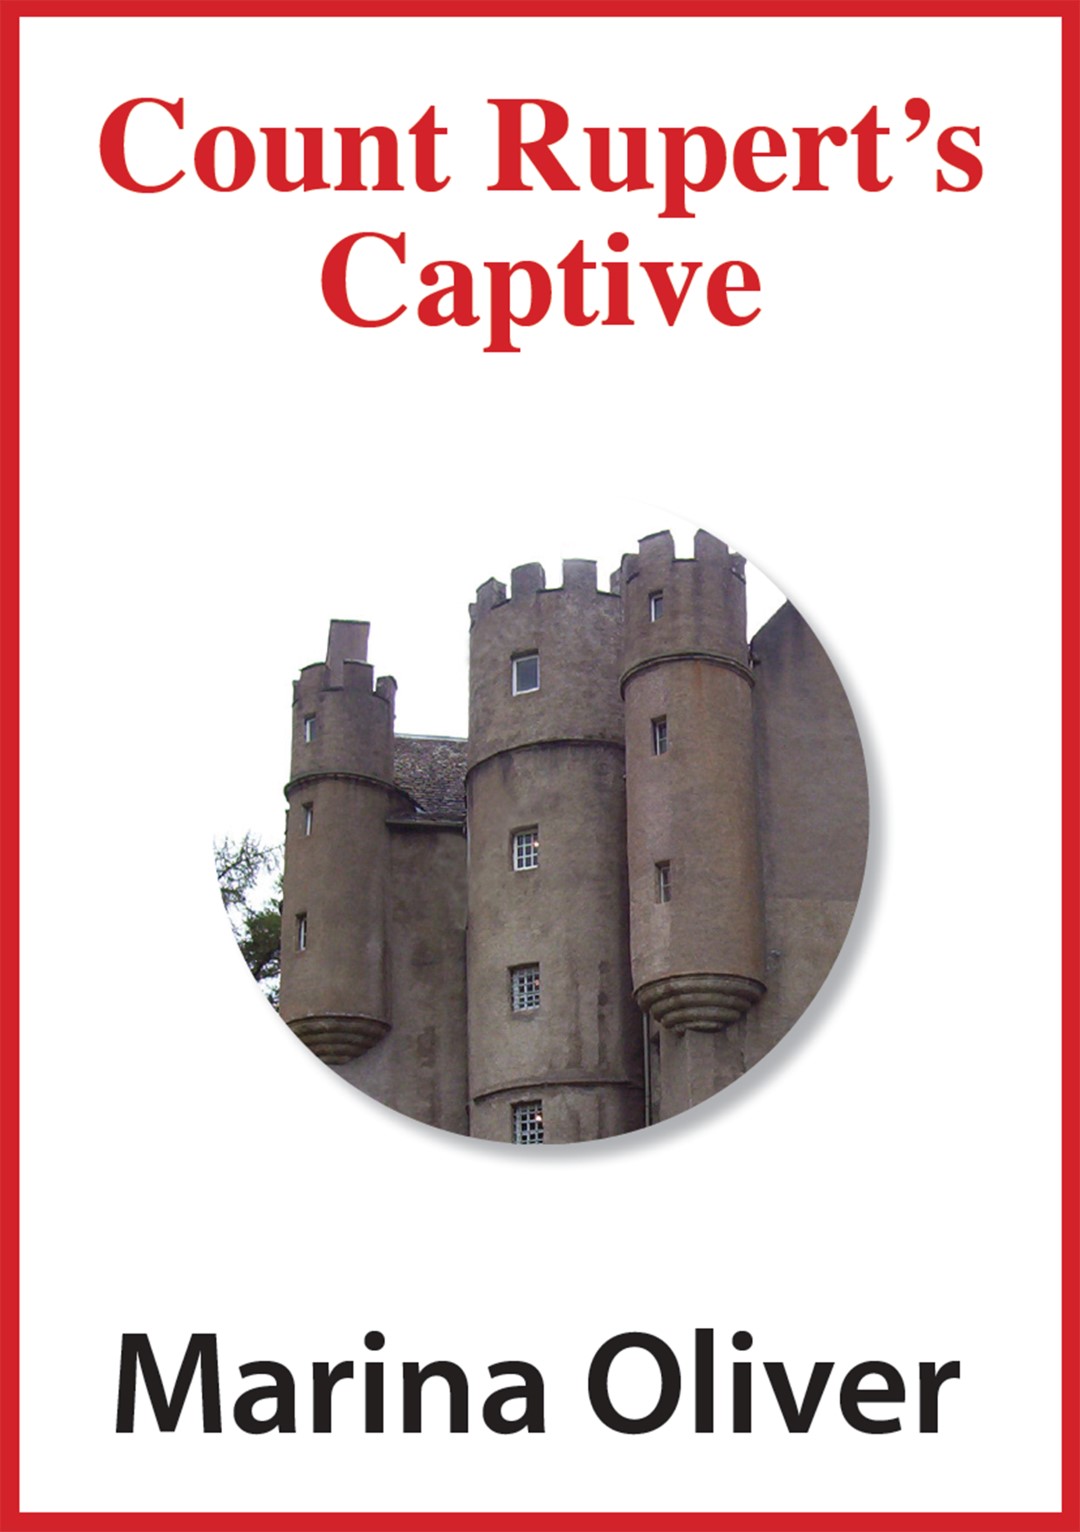 Count Rupert's Captive Ebook